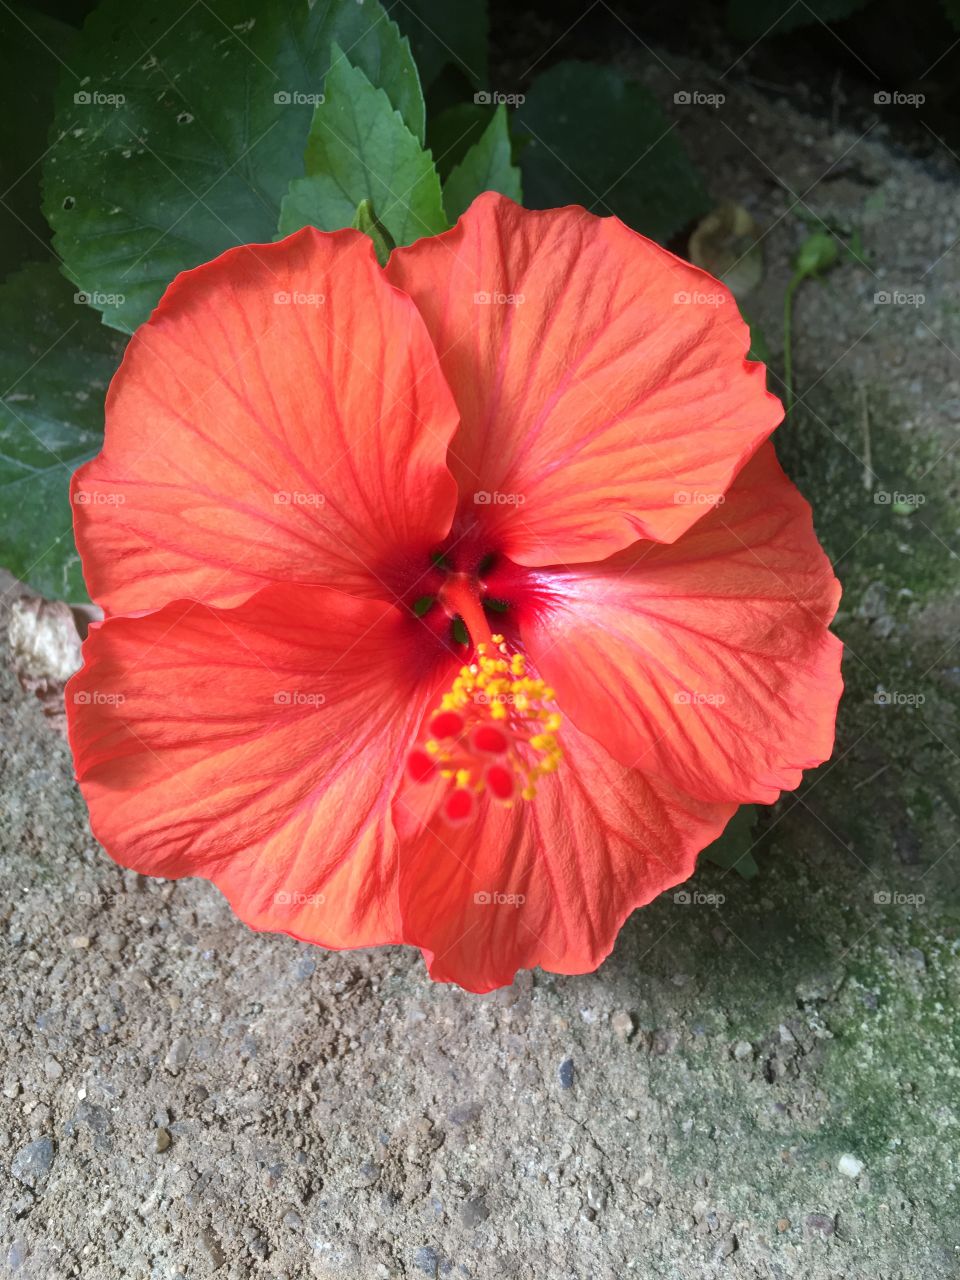 Red orange flower